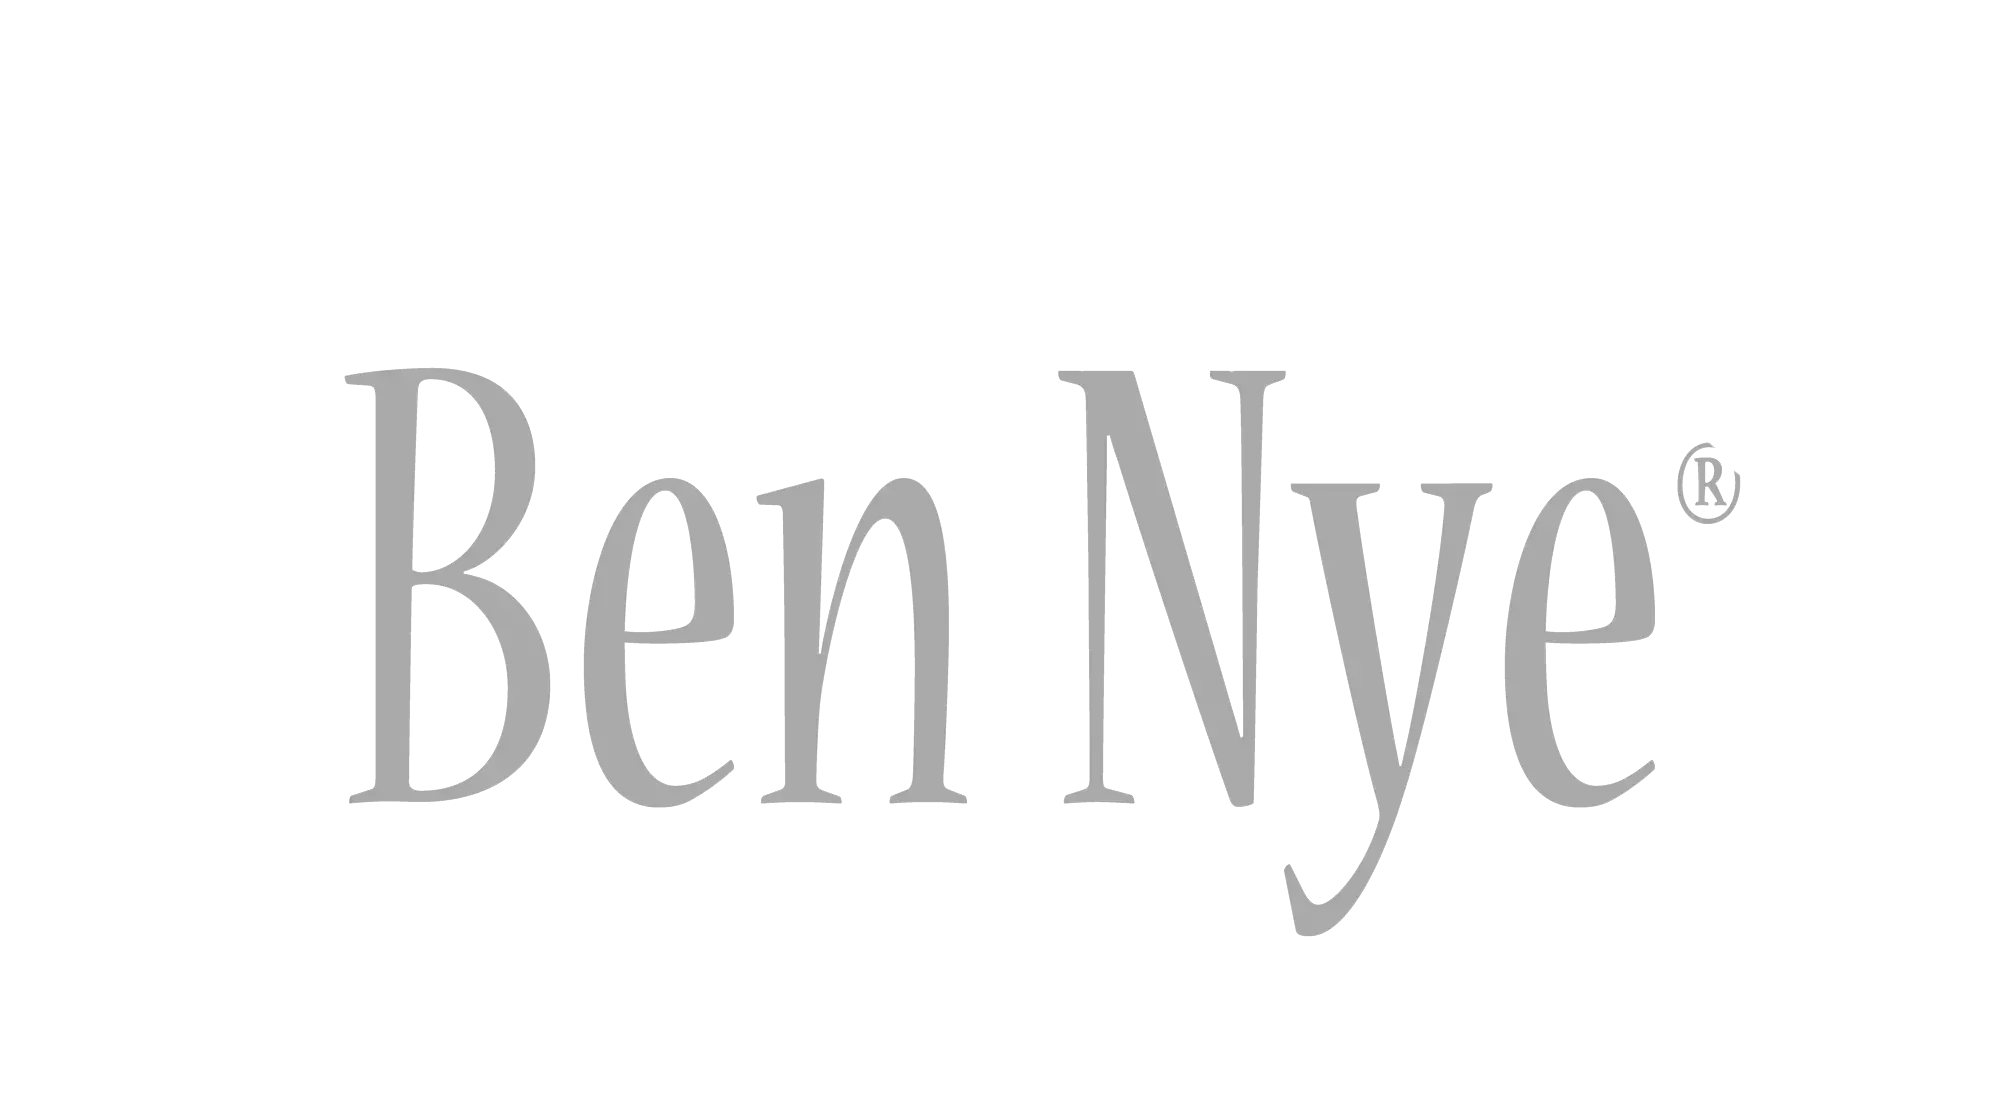 Ben Ney